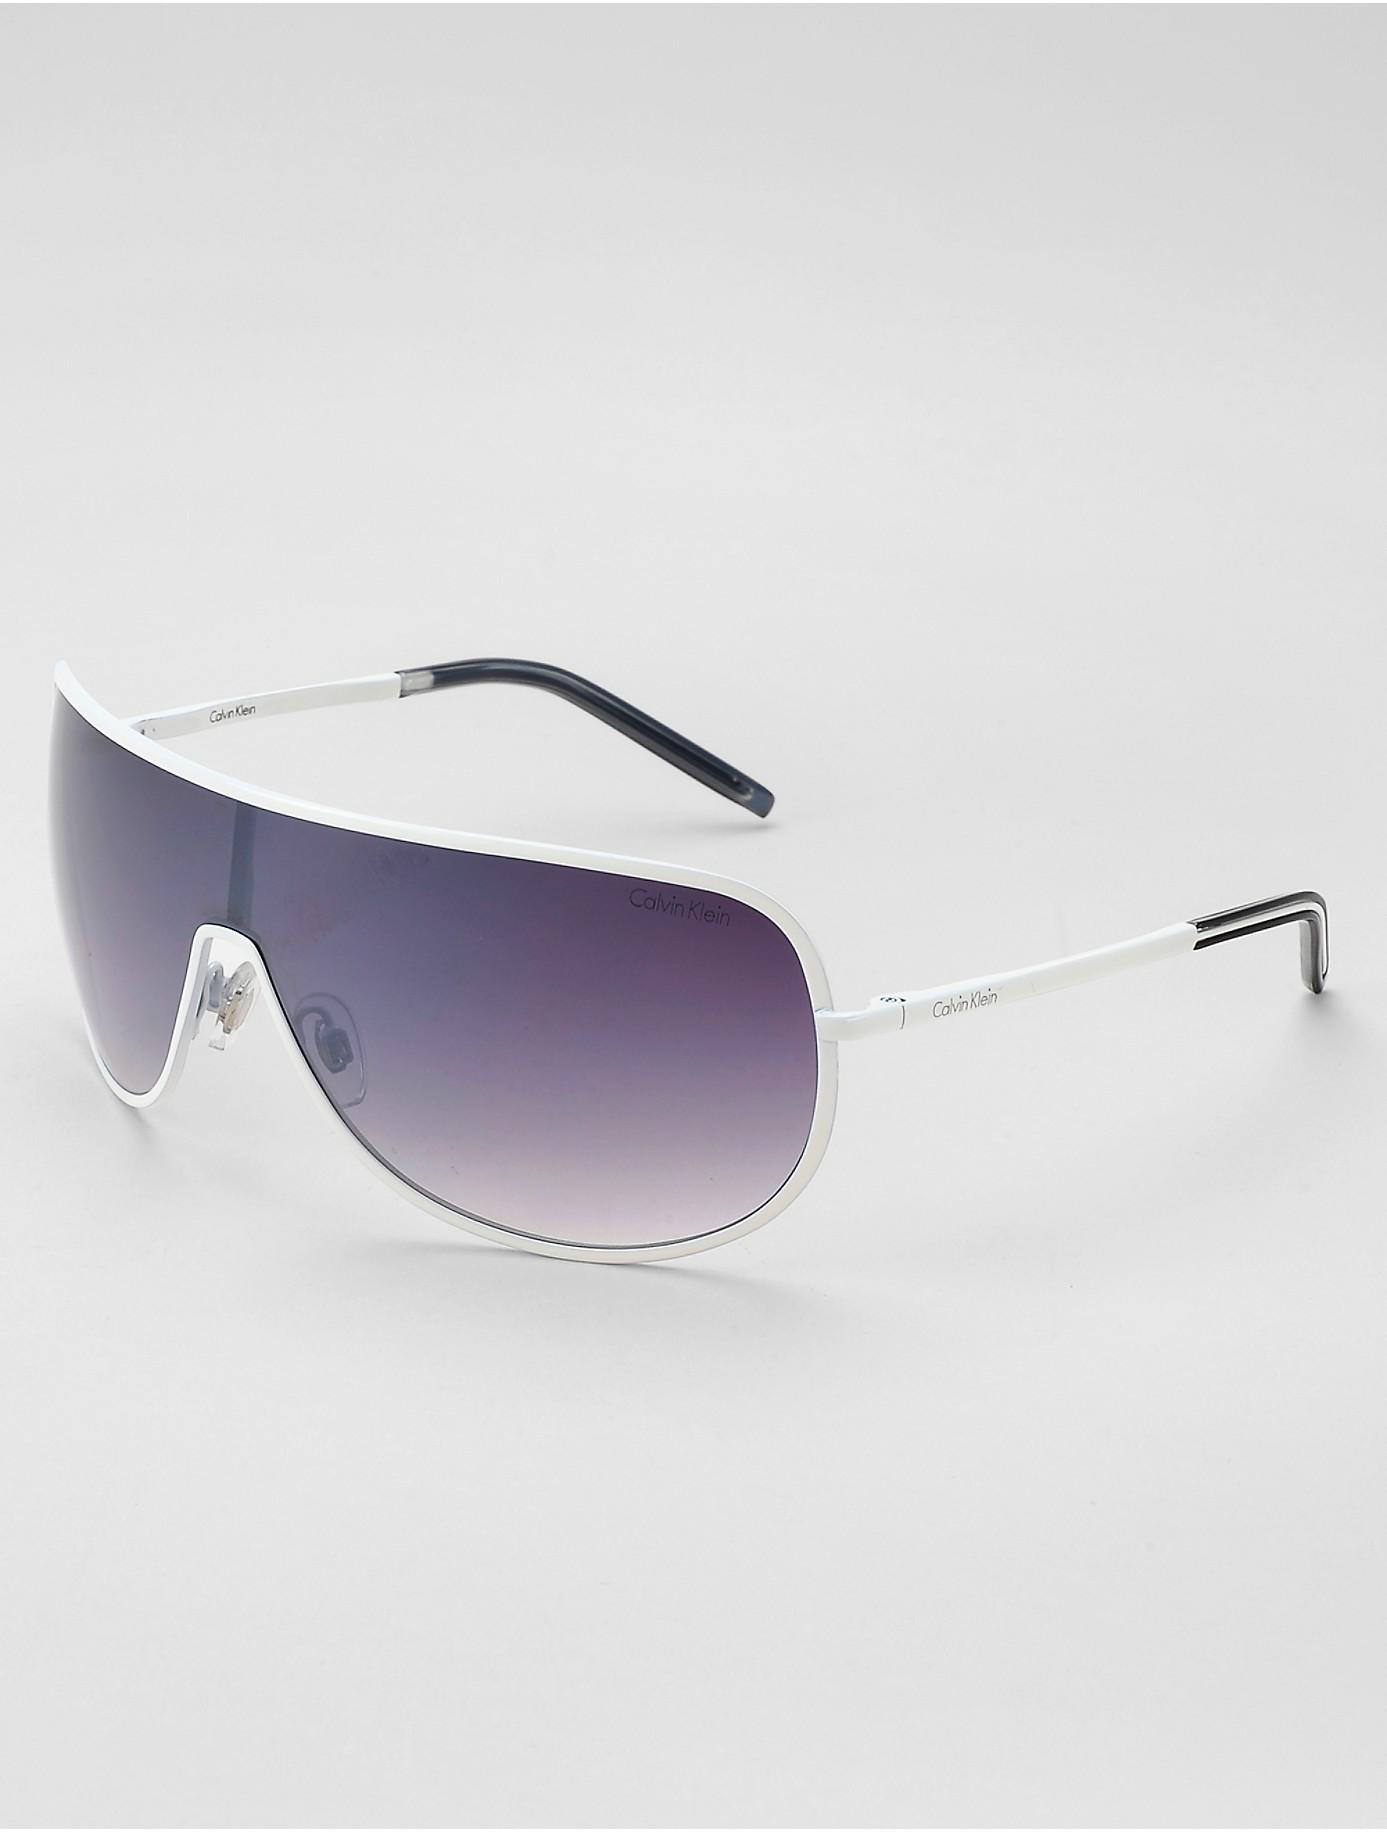 Authentic Versace Sunglasses White Shield Mens Womens Visor Ski 2054  1000/8G | eBay